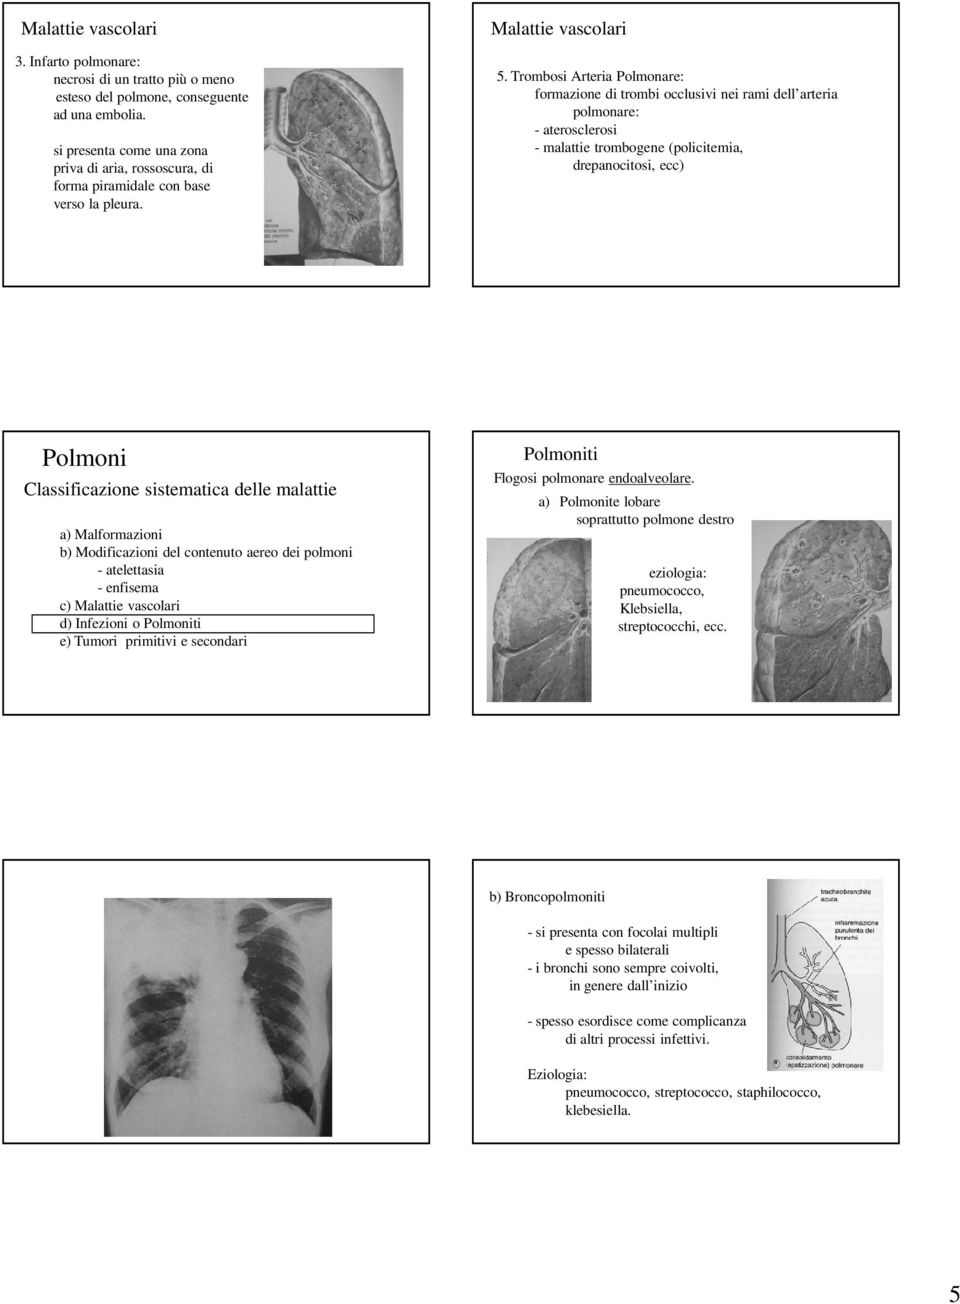 Trombosi Arteria Polmonare: formazione di trombi occlusivi nei rami dell arteria polmonare: - aterosclerosi - malattie trombogene (policitemia, drepanocitosi, ecc) Polmoni Classificazione sistematica